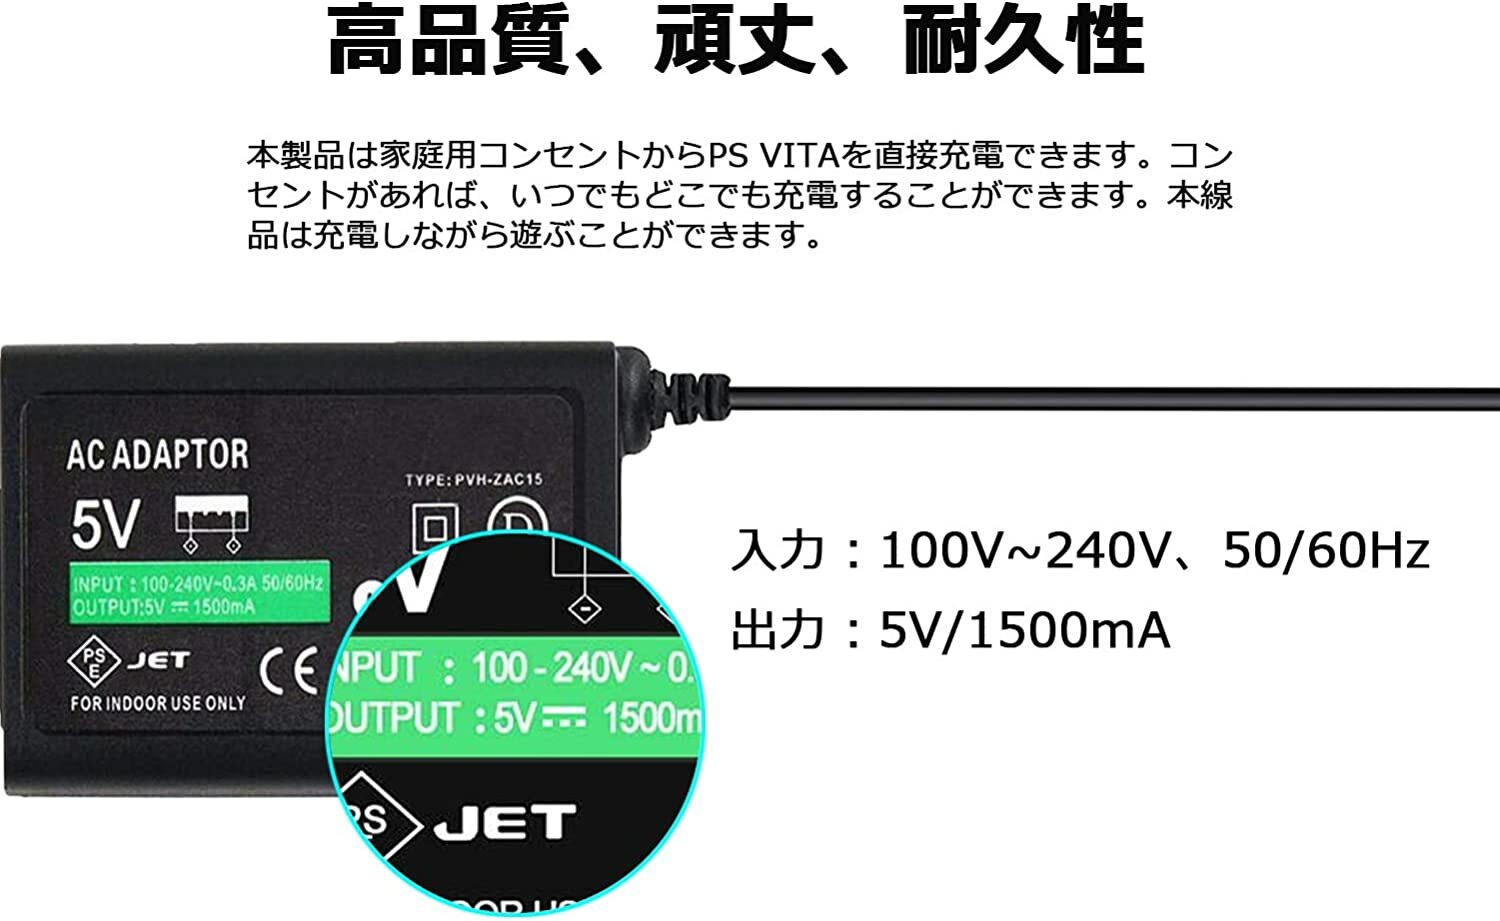 PSV PS Vita PCH-1000 専用 充電器 ACアダプター 家庭用コンセントタイプ 充電器 USB ケーブル セット